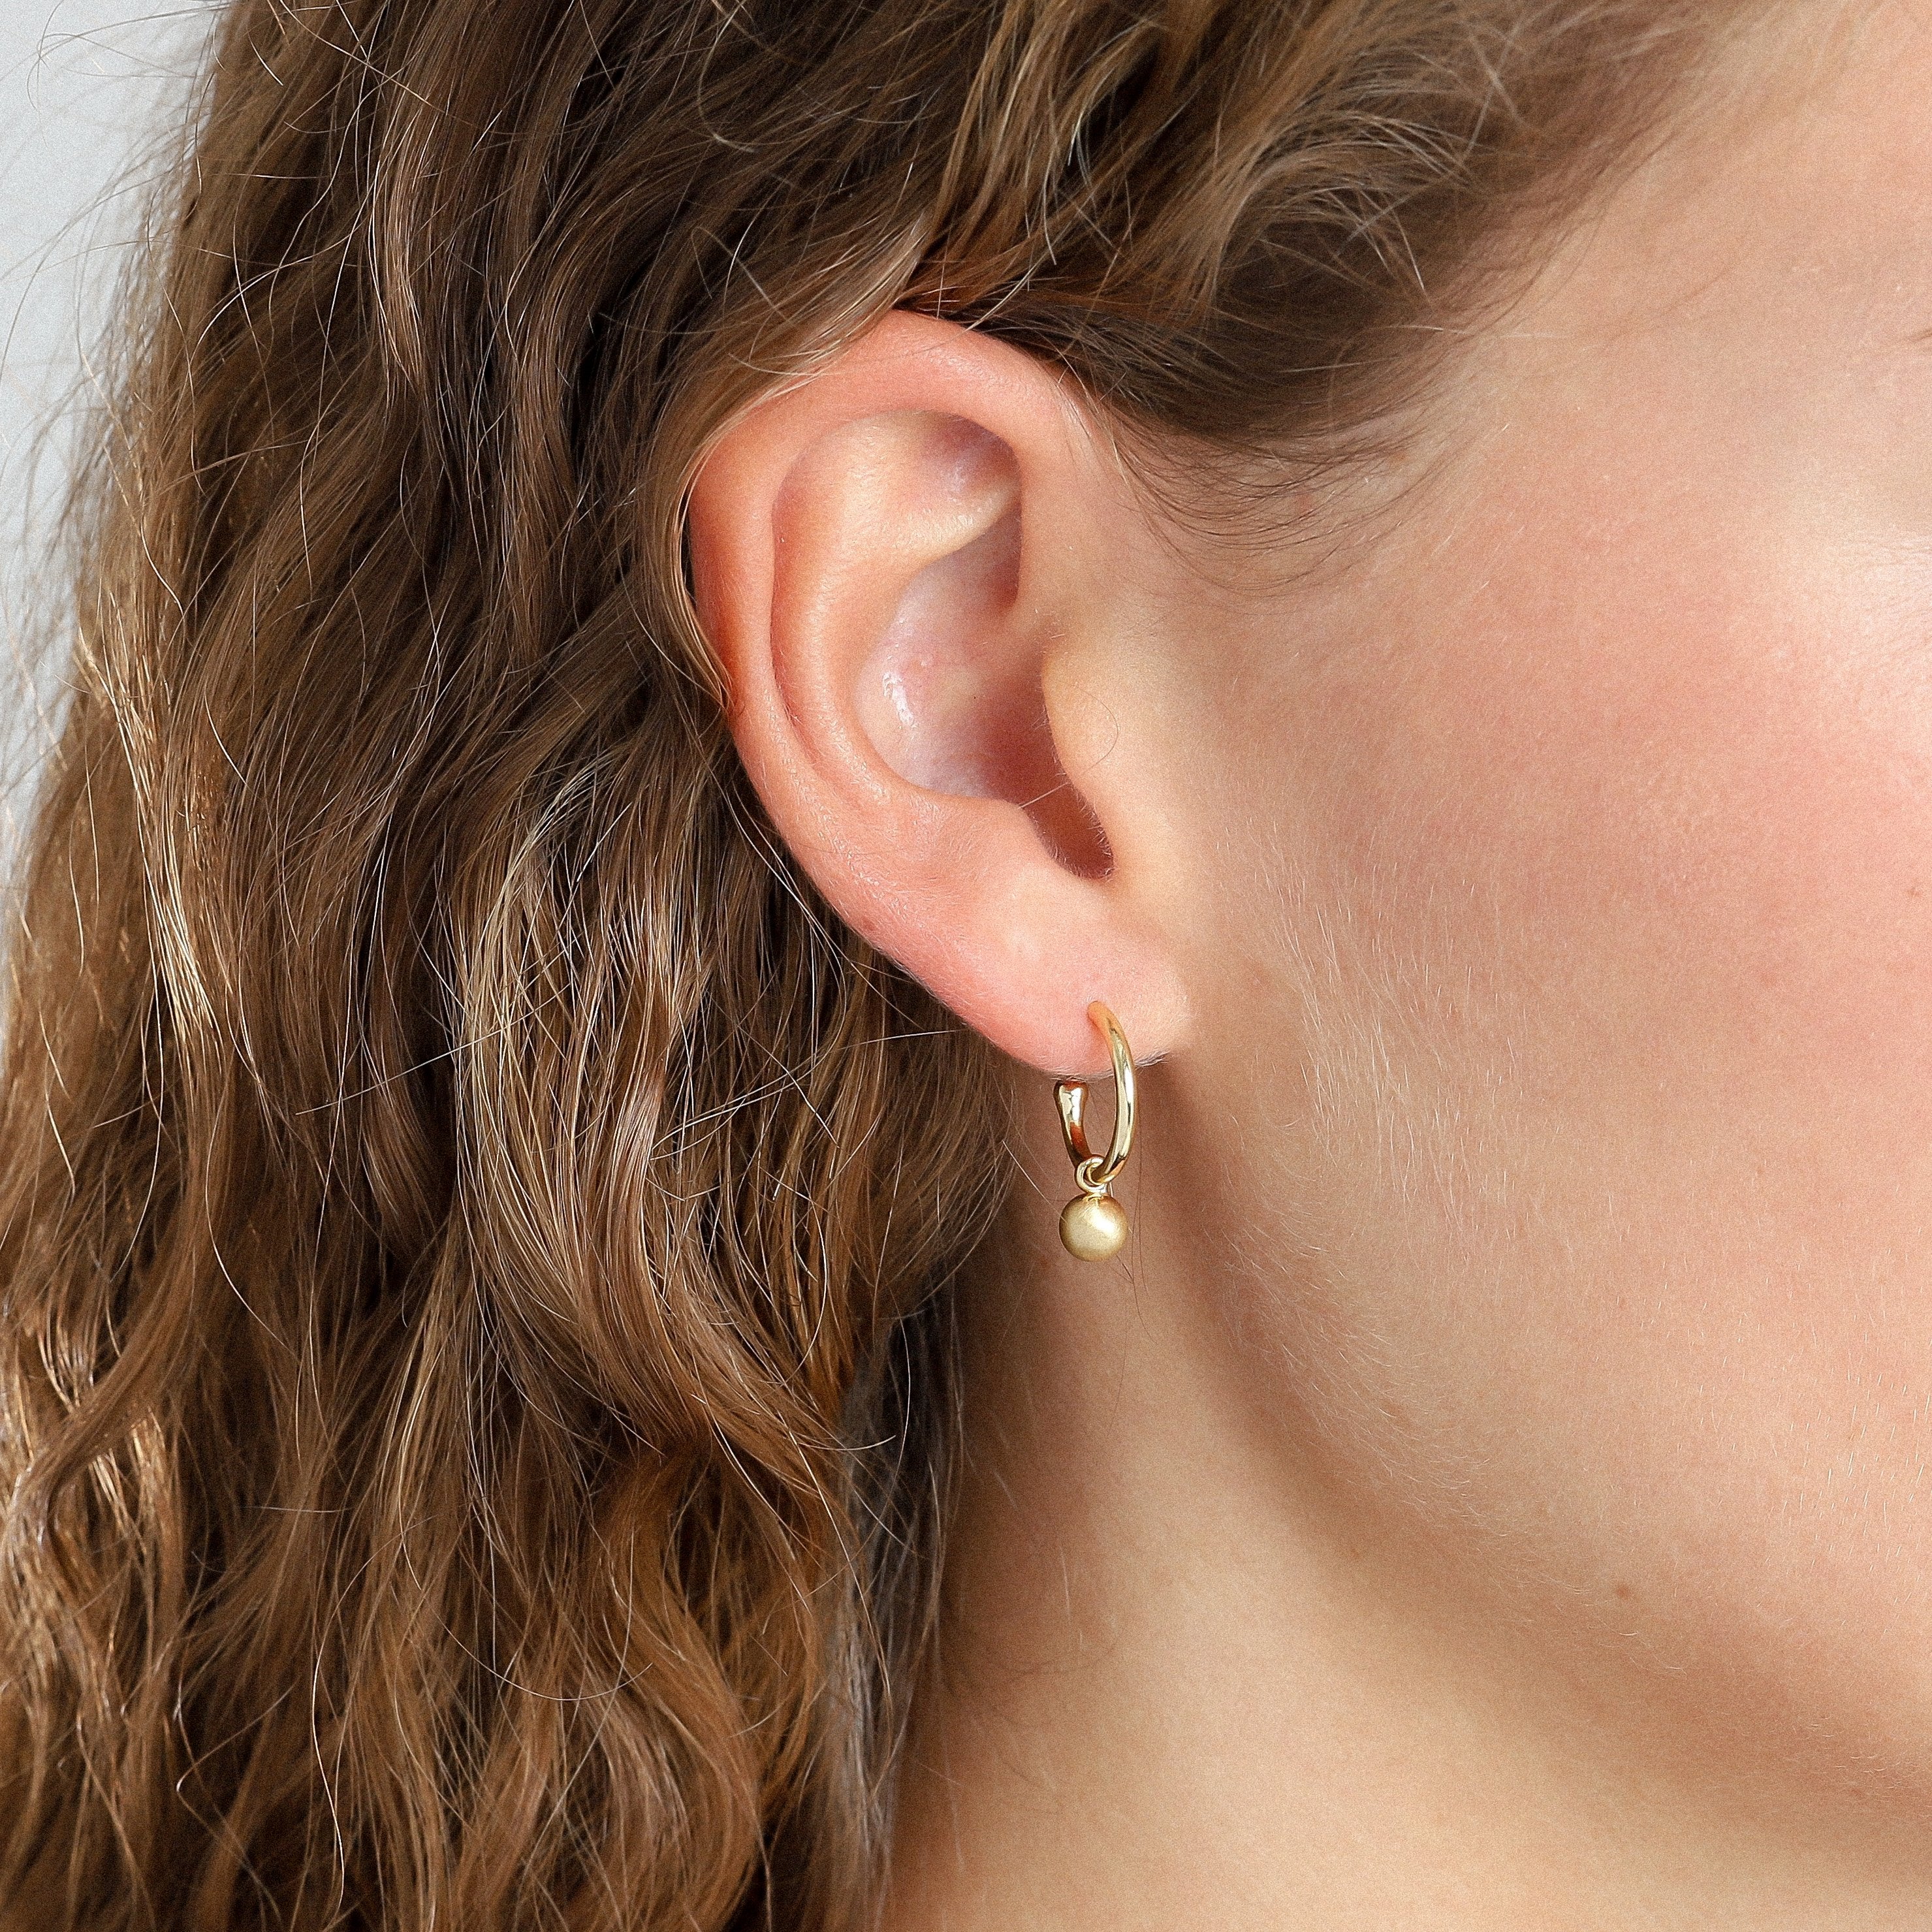 Berta Gold Earrings